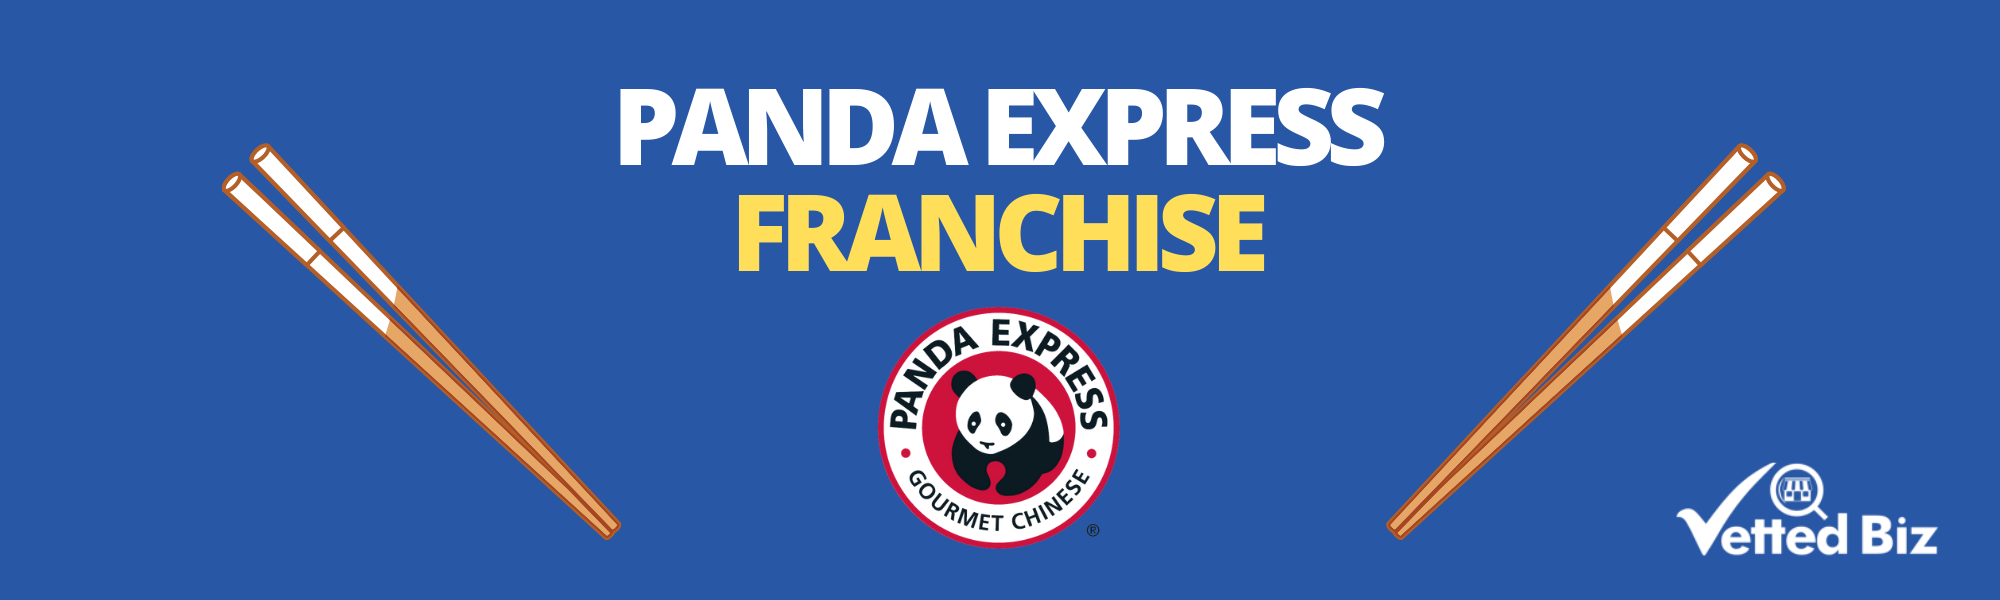 panda express franchise